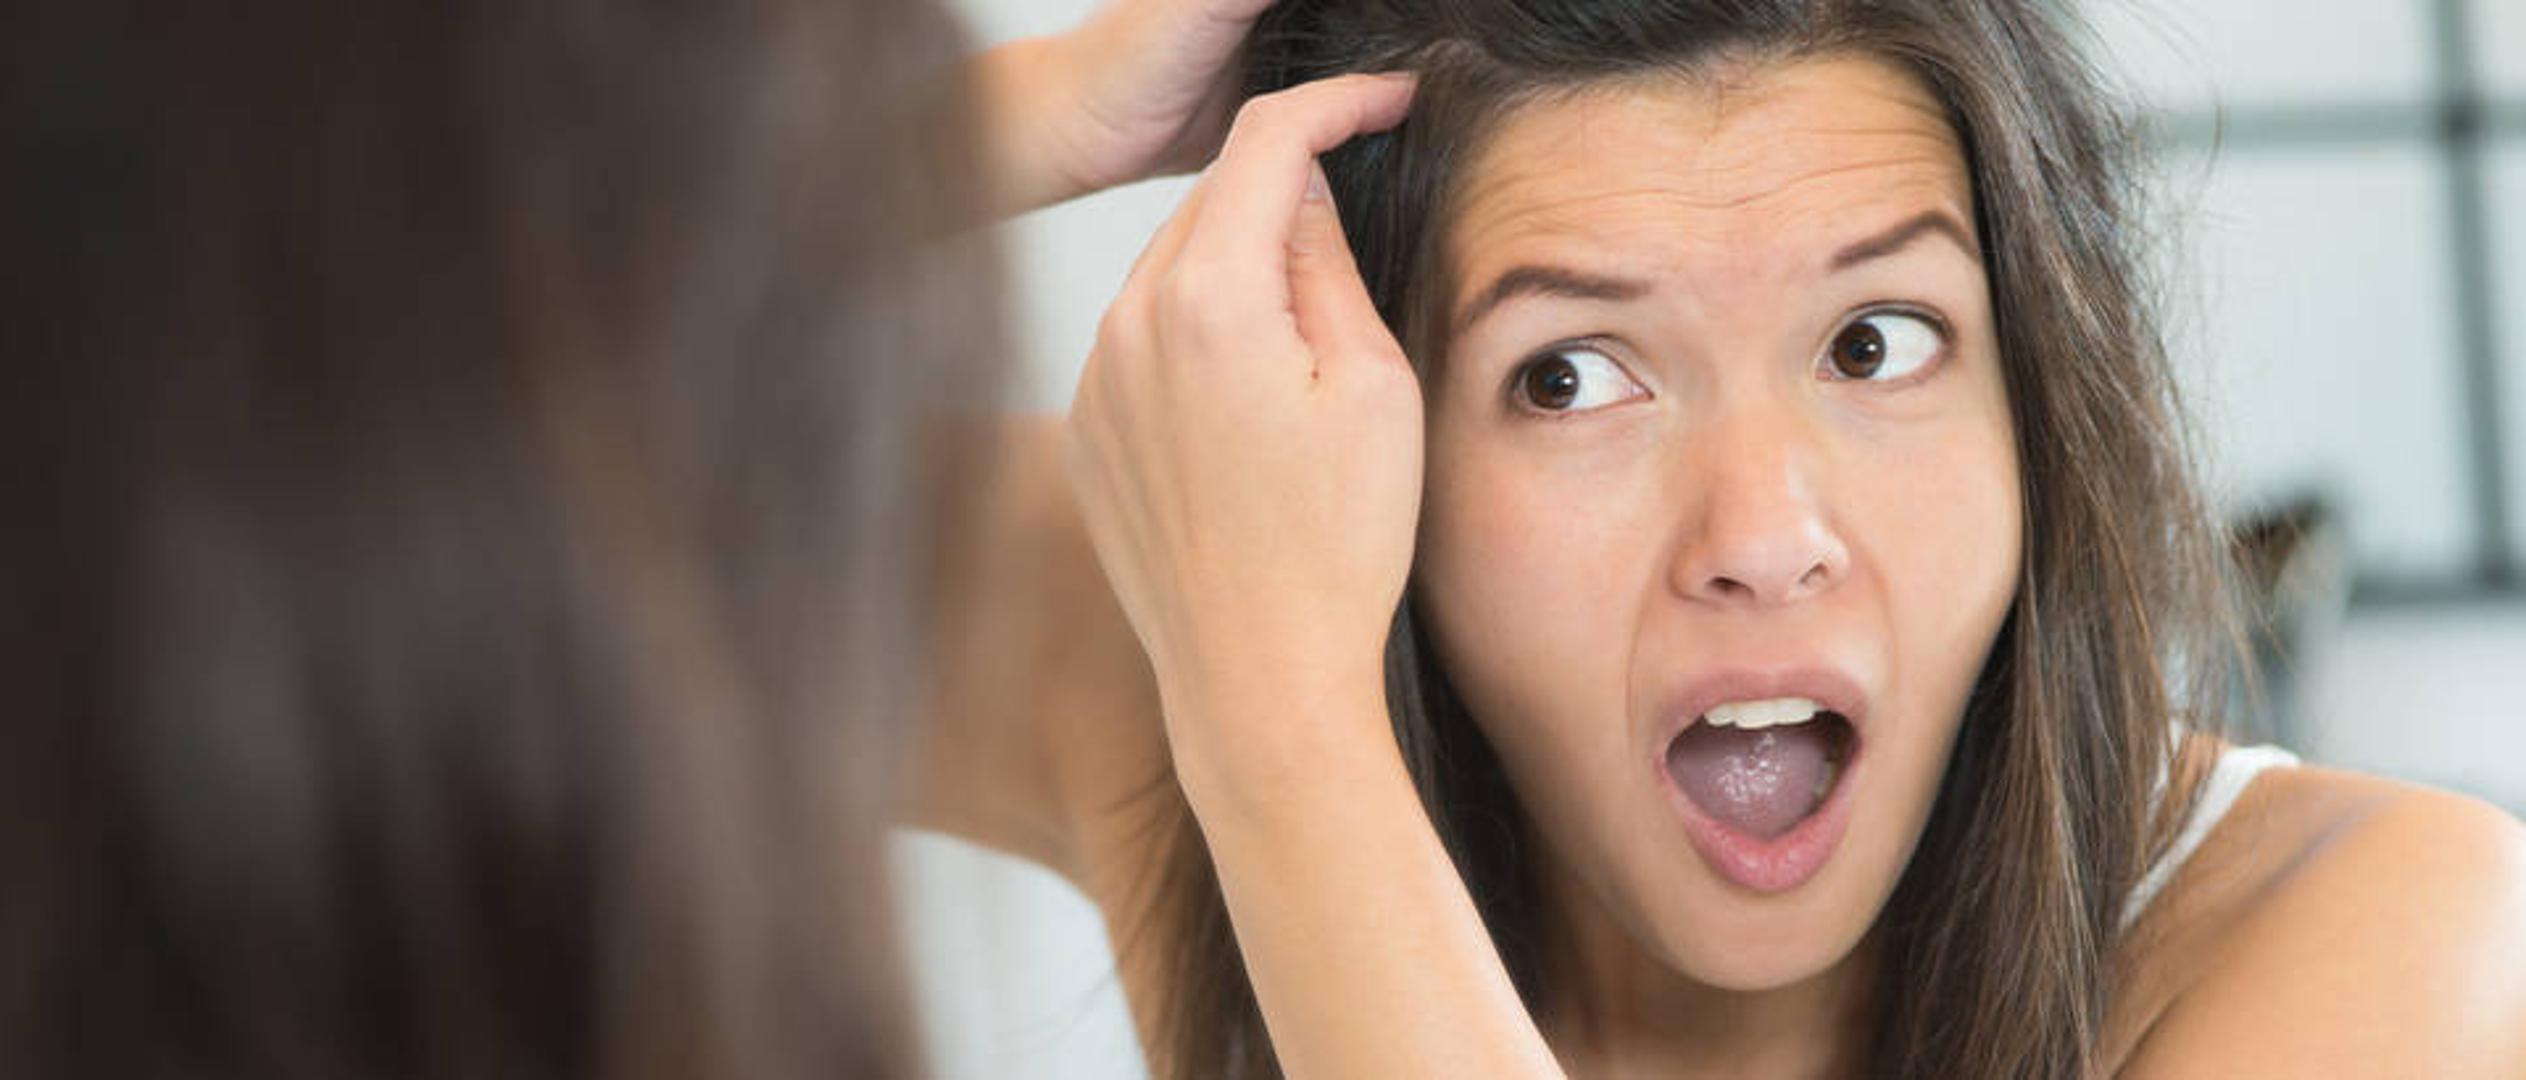 Stres - Ako ste učestalo pod stresom, u većem ste riziku da vaša kosa postane sijeda. Pokušajte kontrolirati stresne situacije. 